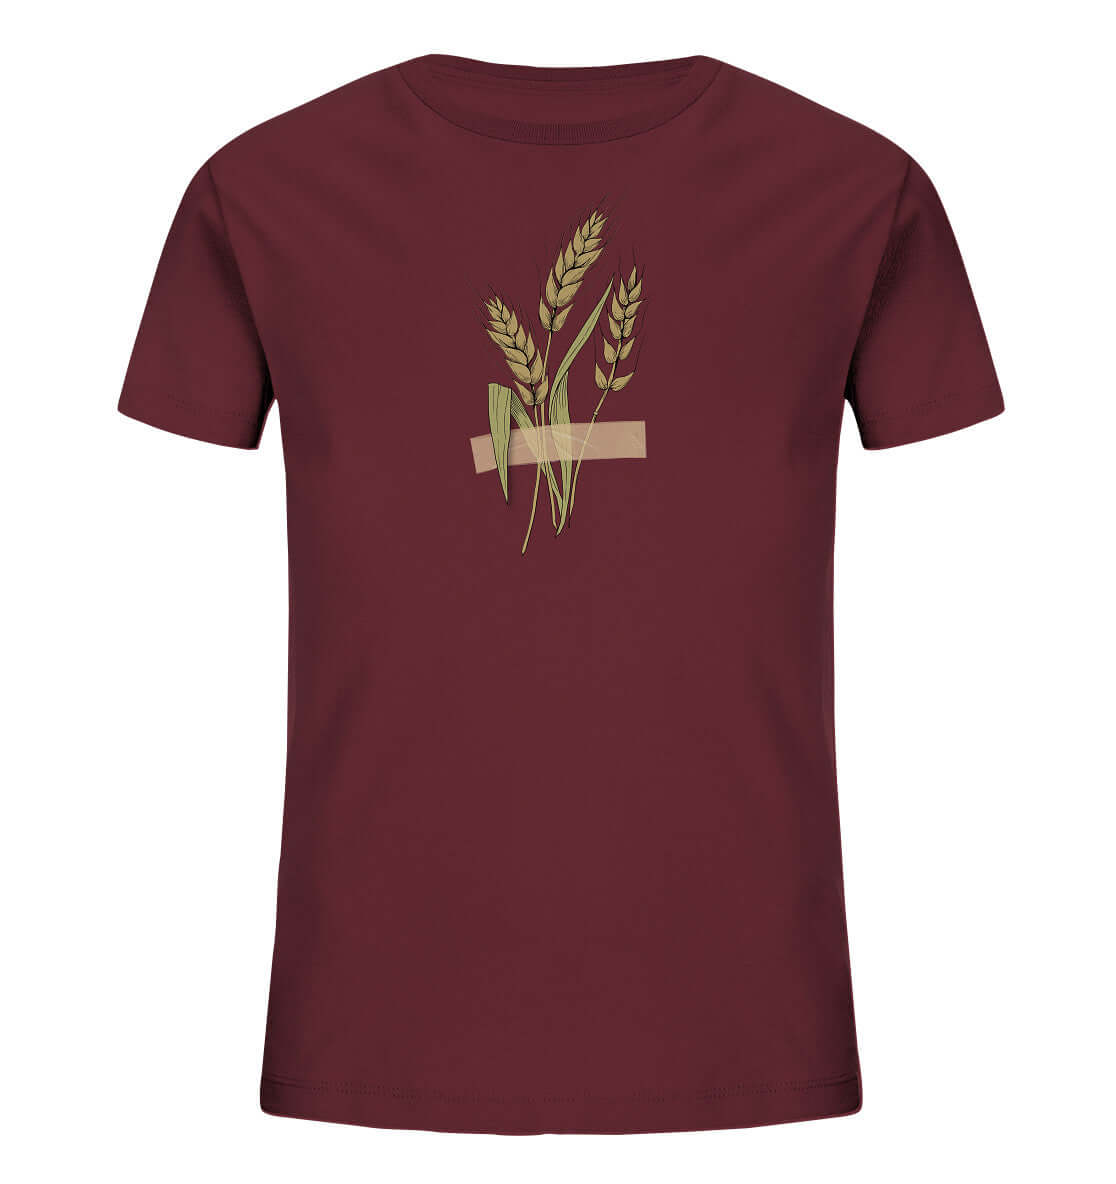 Kinder Shirt Gerste Weizen Ähre festgeklebt Agrar Acker Weizen Landwirt Shirt Landwirtschaft Dorfkram®